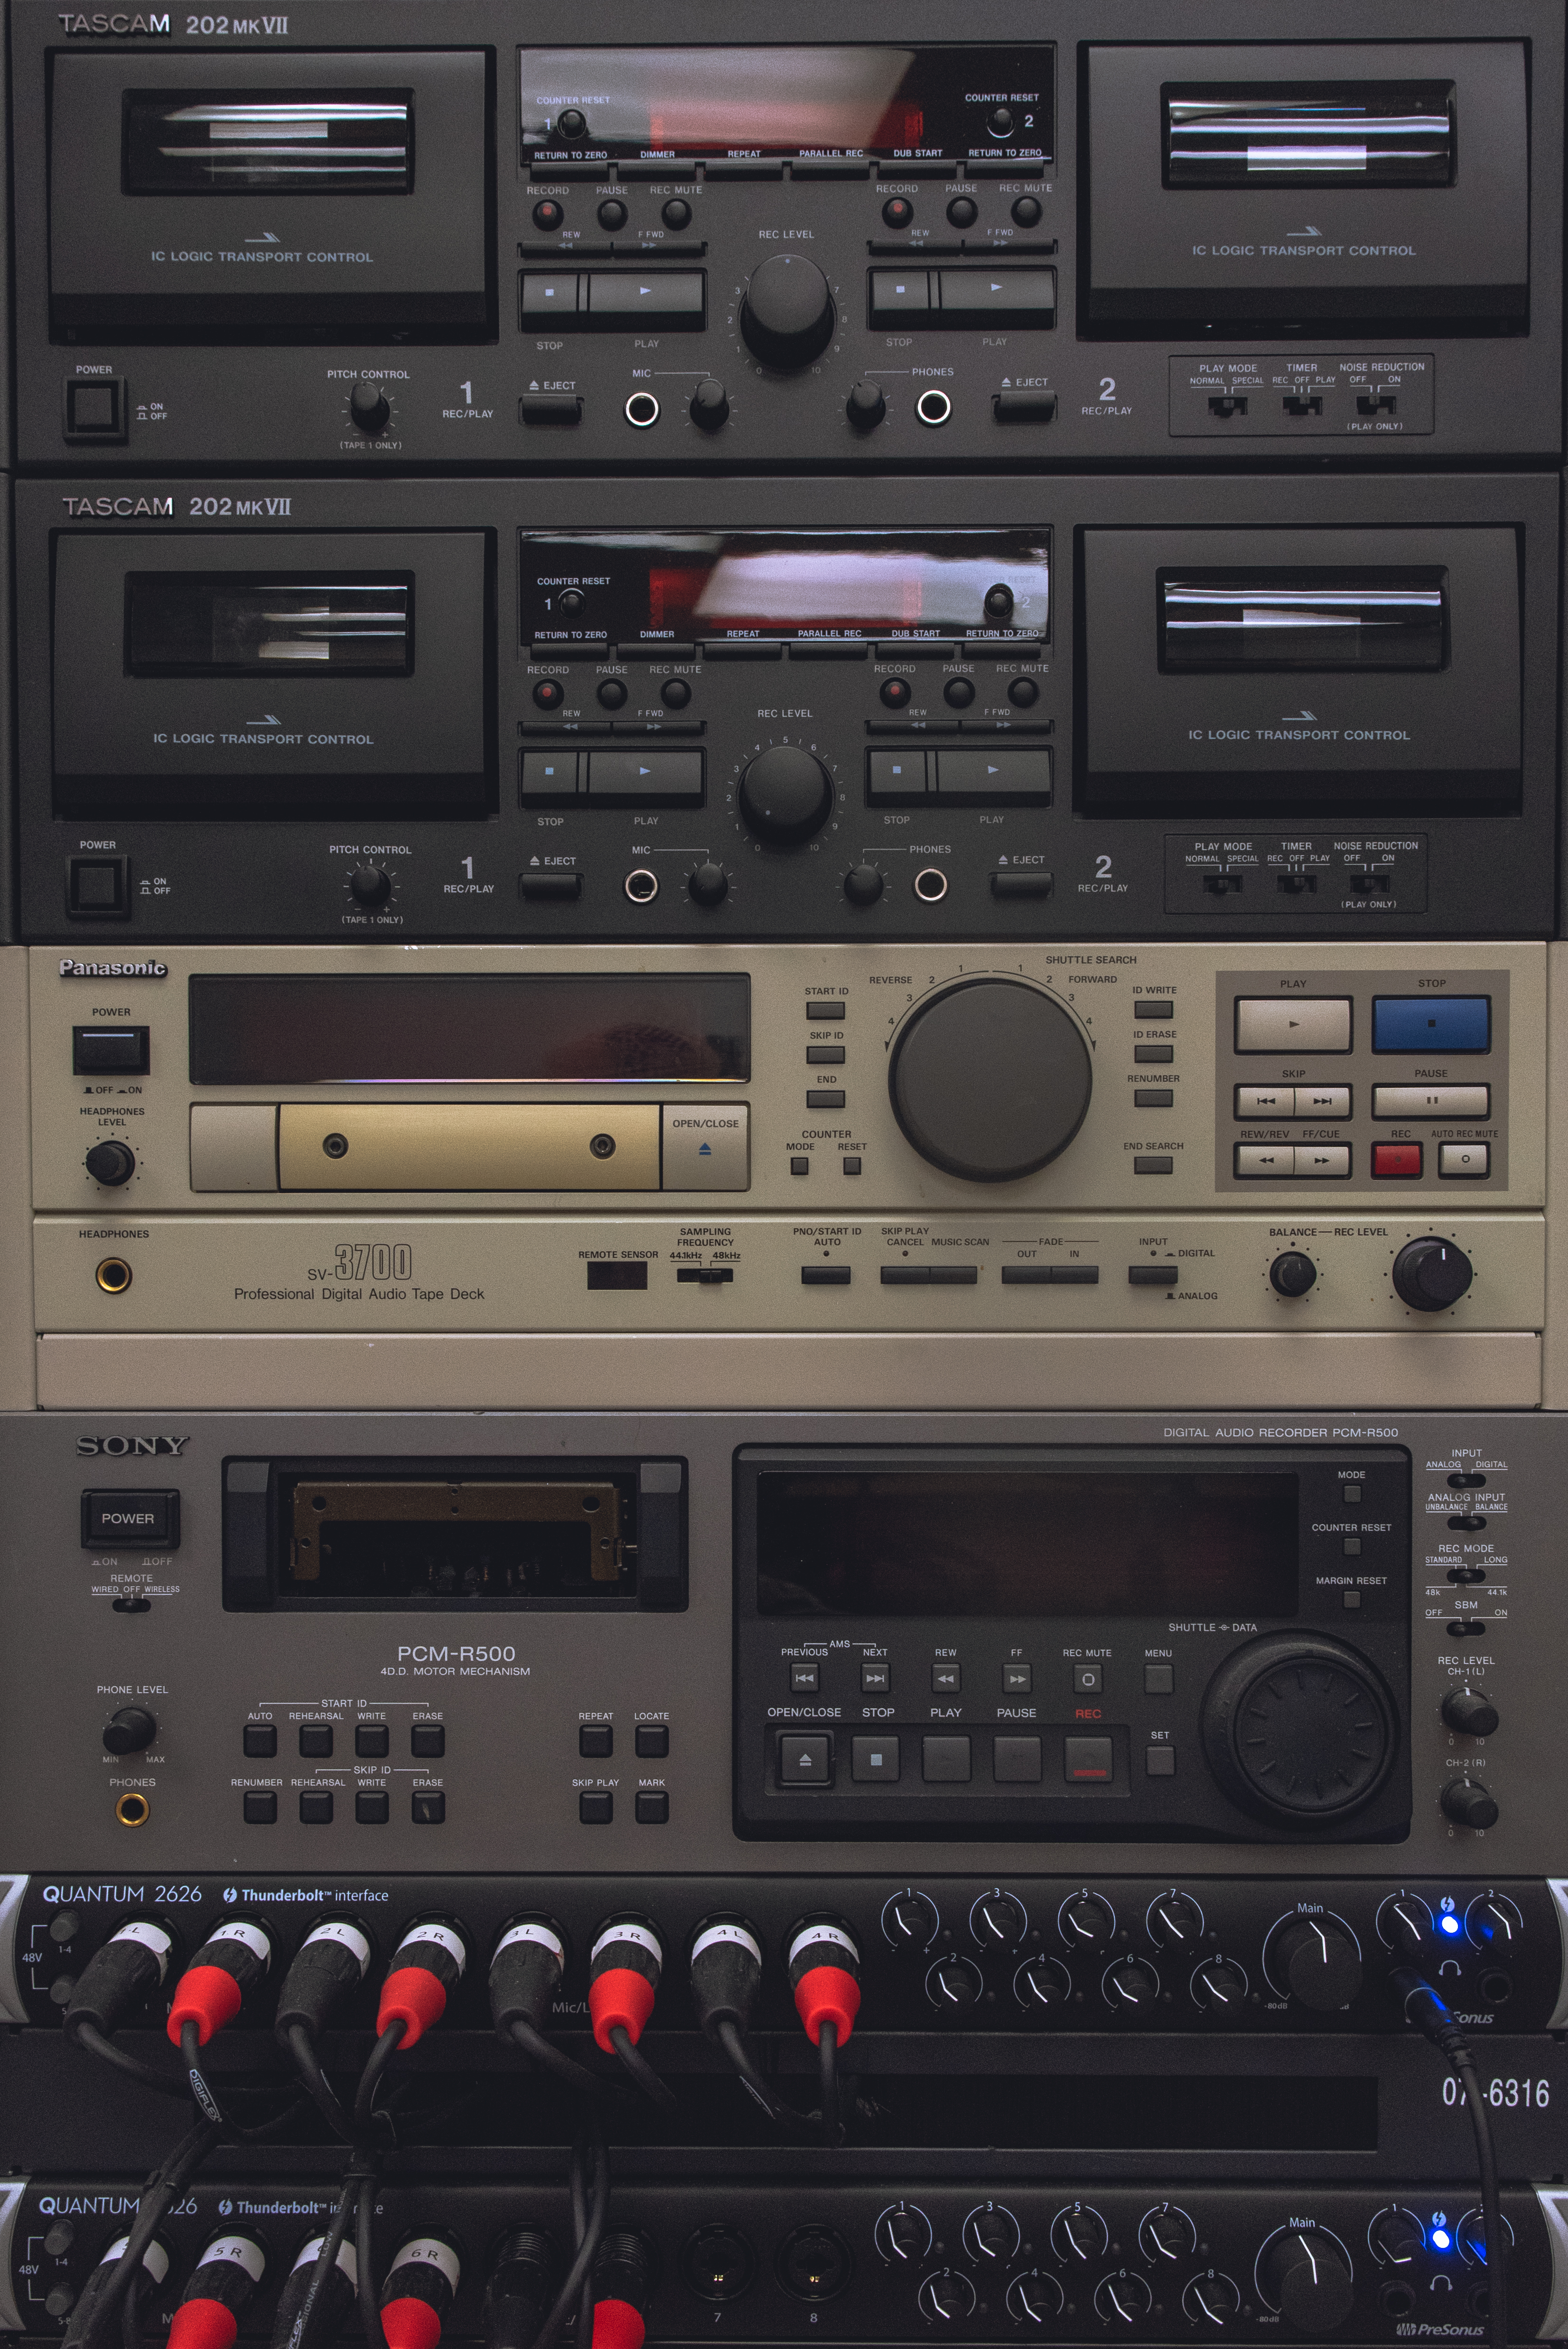 image of an audio hardware rack displaying various tapedecks.